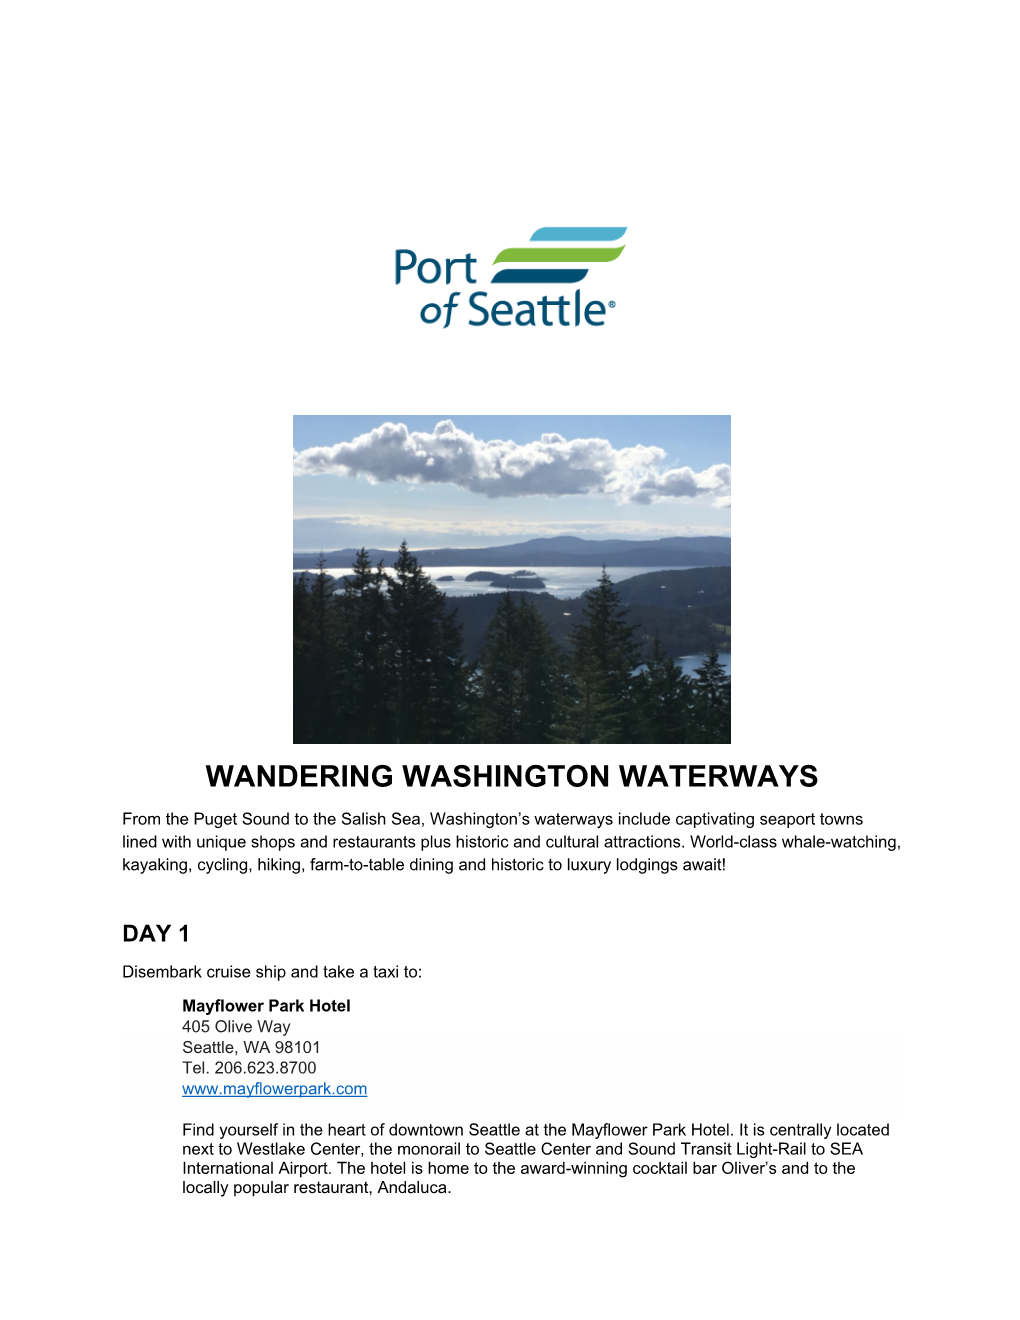 Wandering Washington Waterways